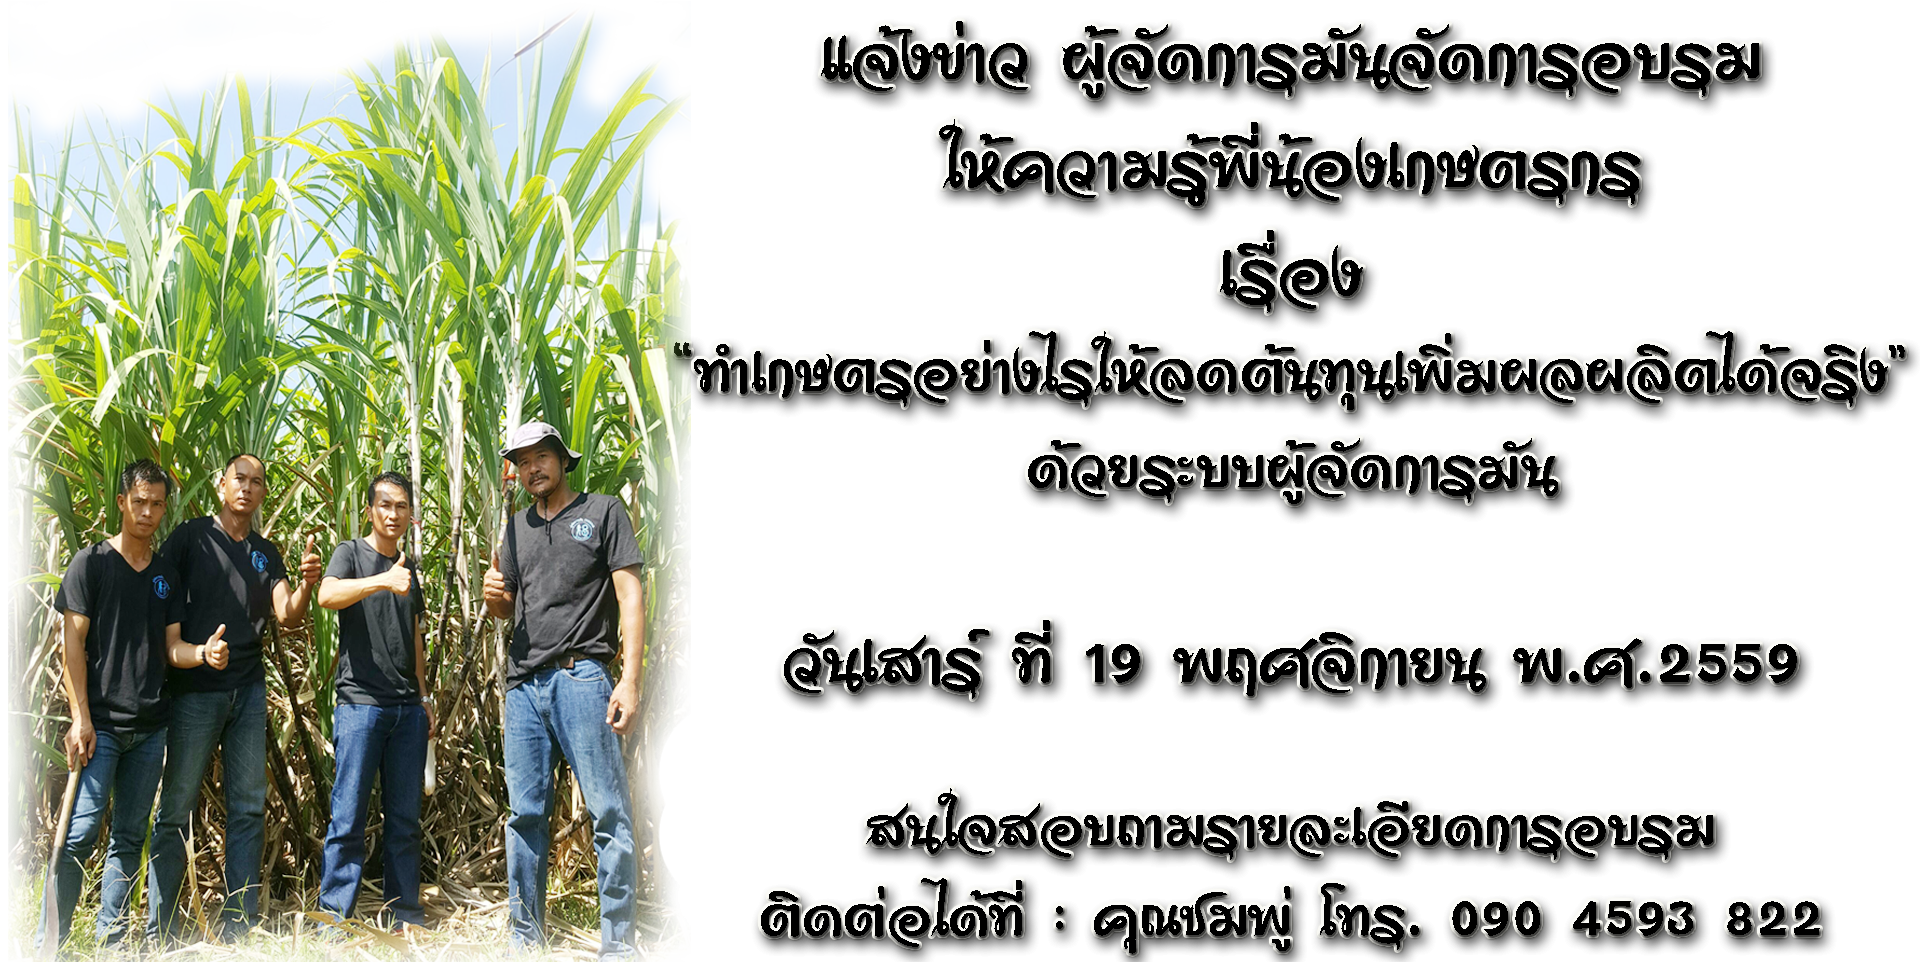 จัดอบรม "ทำเกษตรอย่างไรให้ลดต้นทุนเพิ่มผลผลิตได้จริง ด้วยระบบผู้จัดการมัน" วันที่ 19 พ.ย. 2559